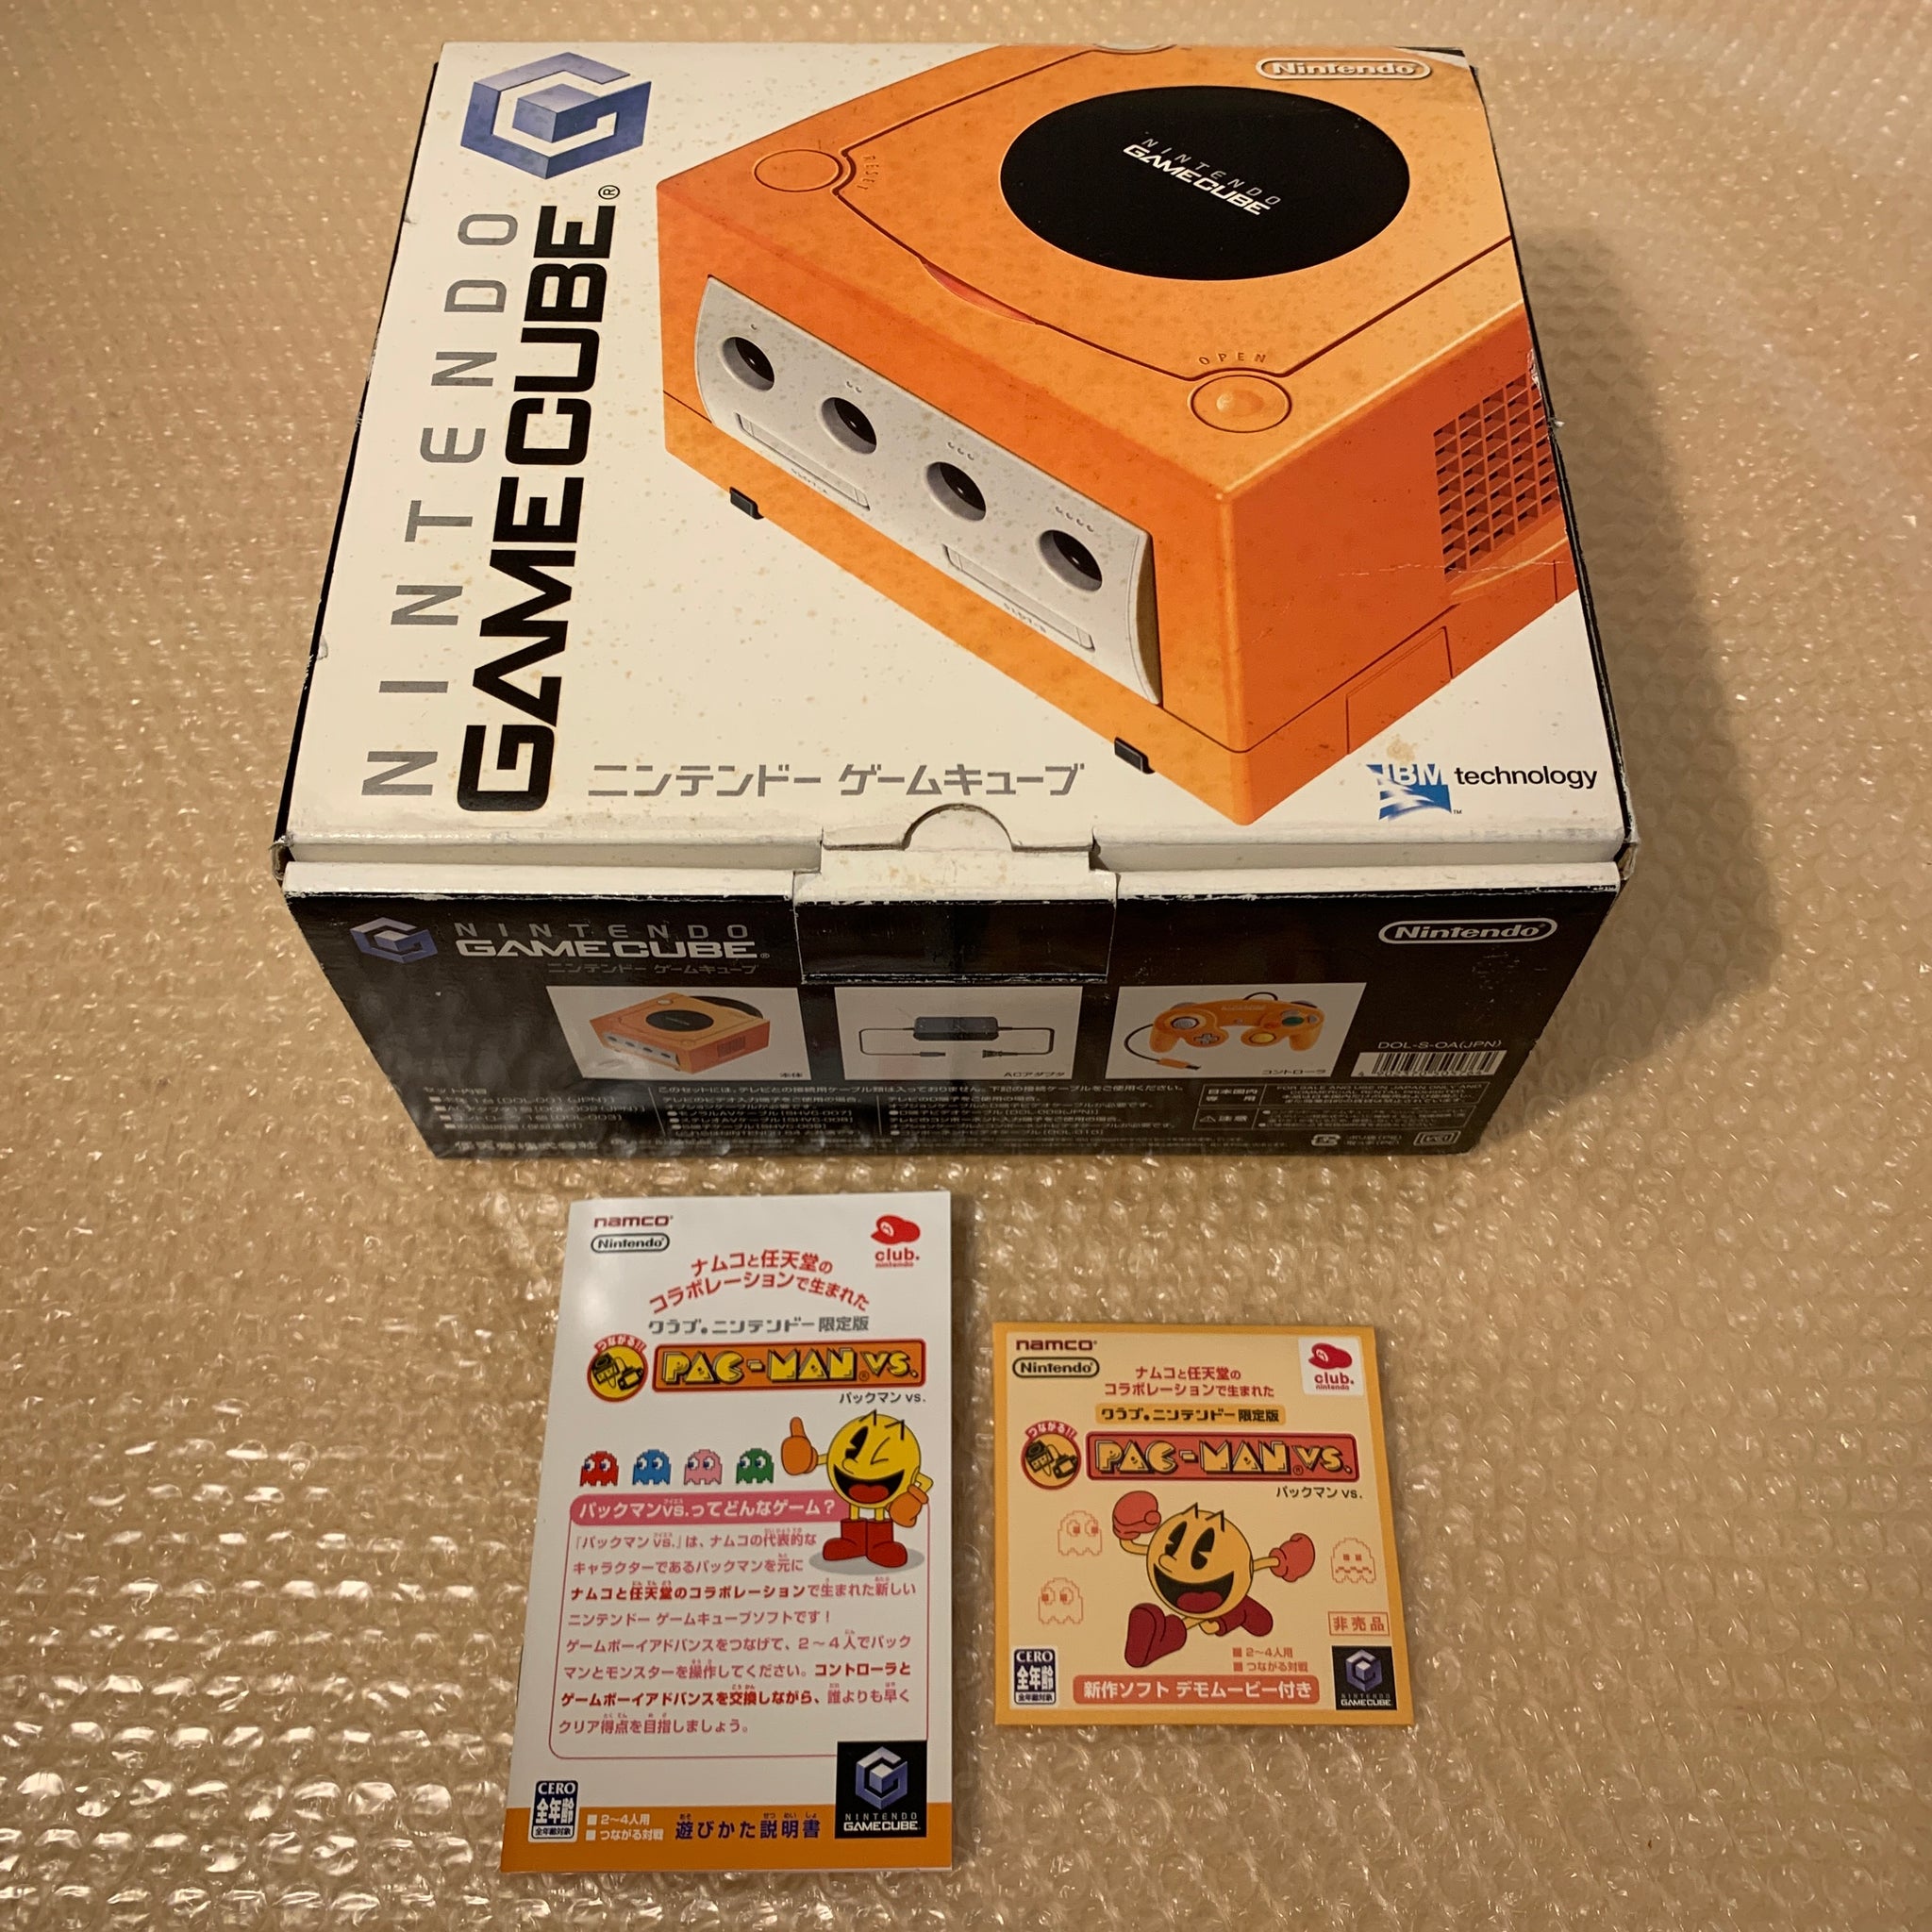 Orange Gamecube with Picoboot - RetroAsia